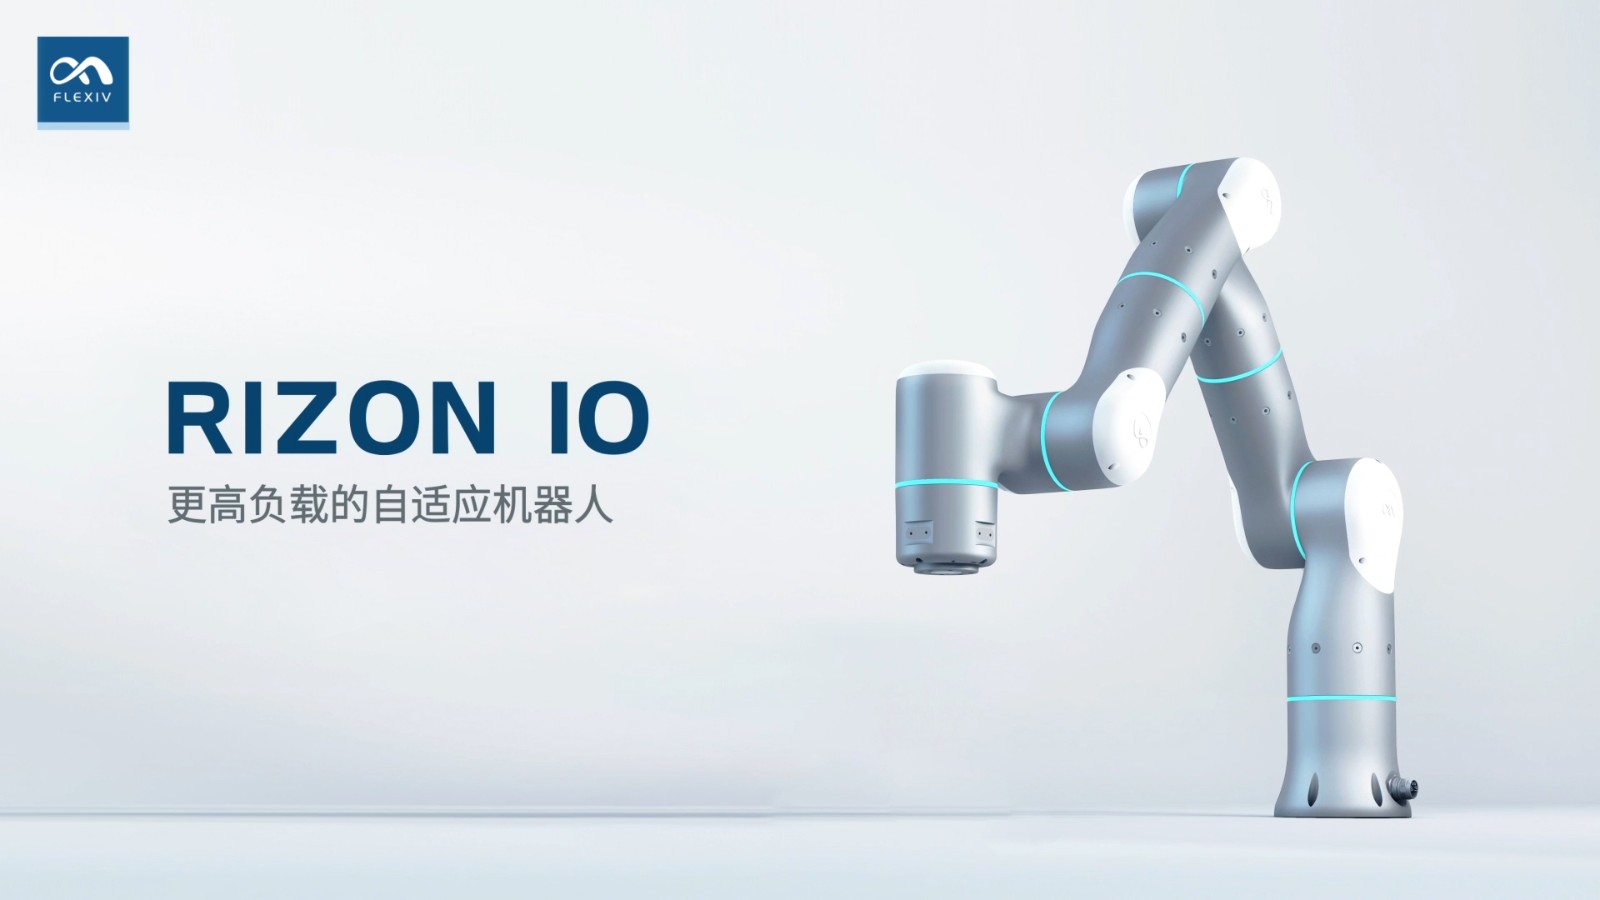 非夕科技参评“维科杯?OFweek 2021中国机器人行业年度优秀产品奖”